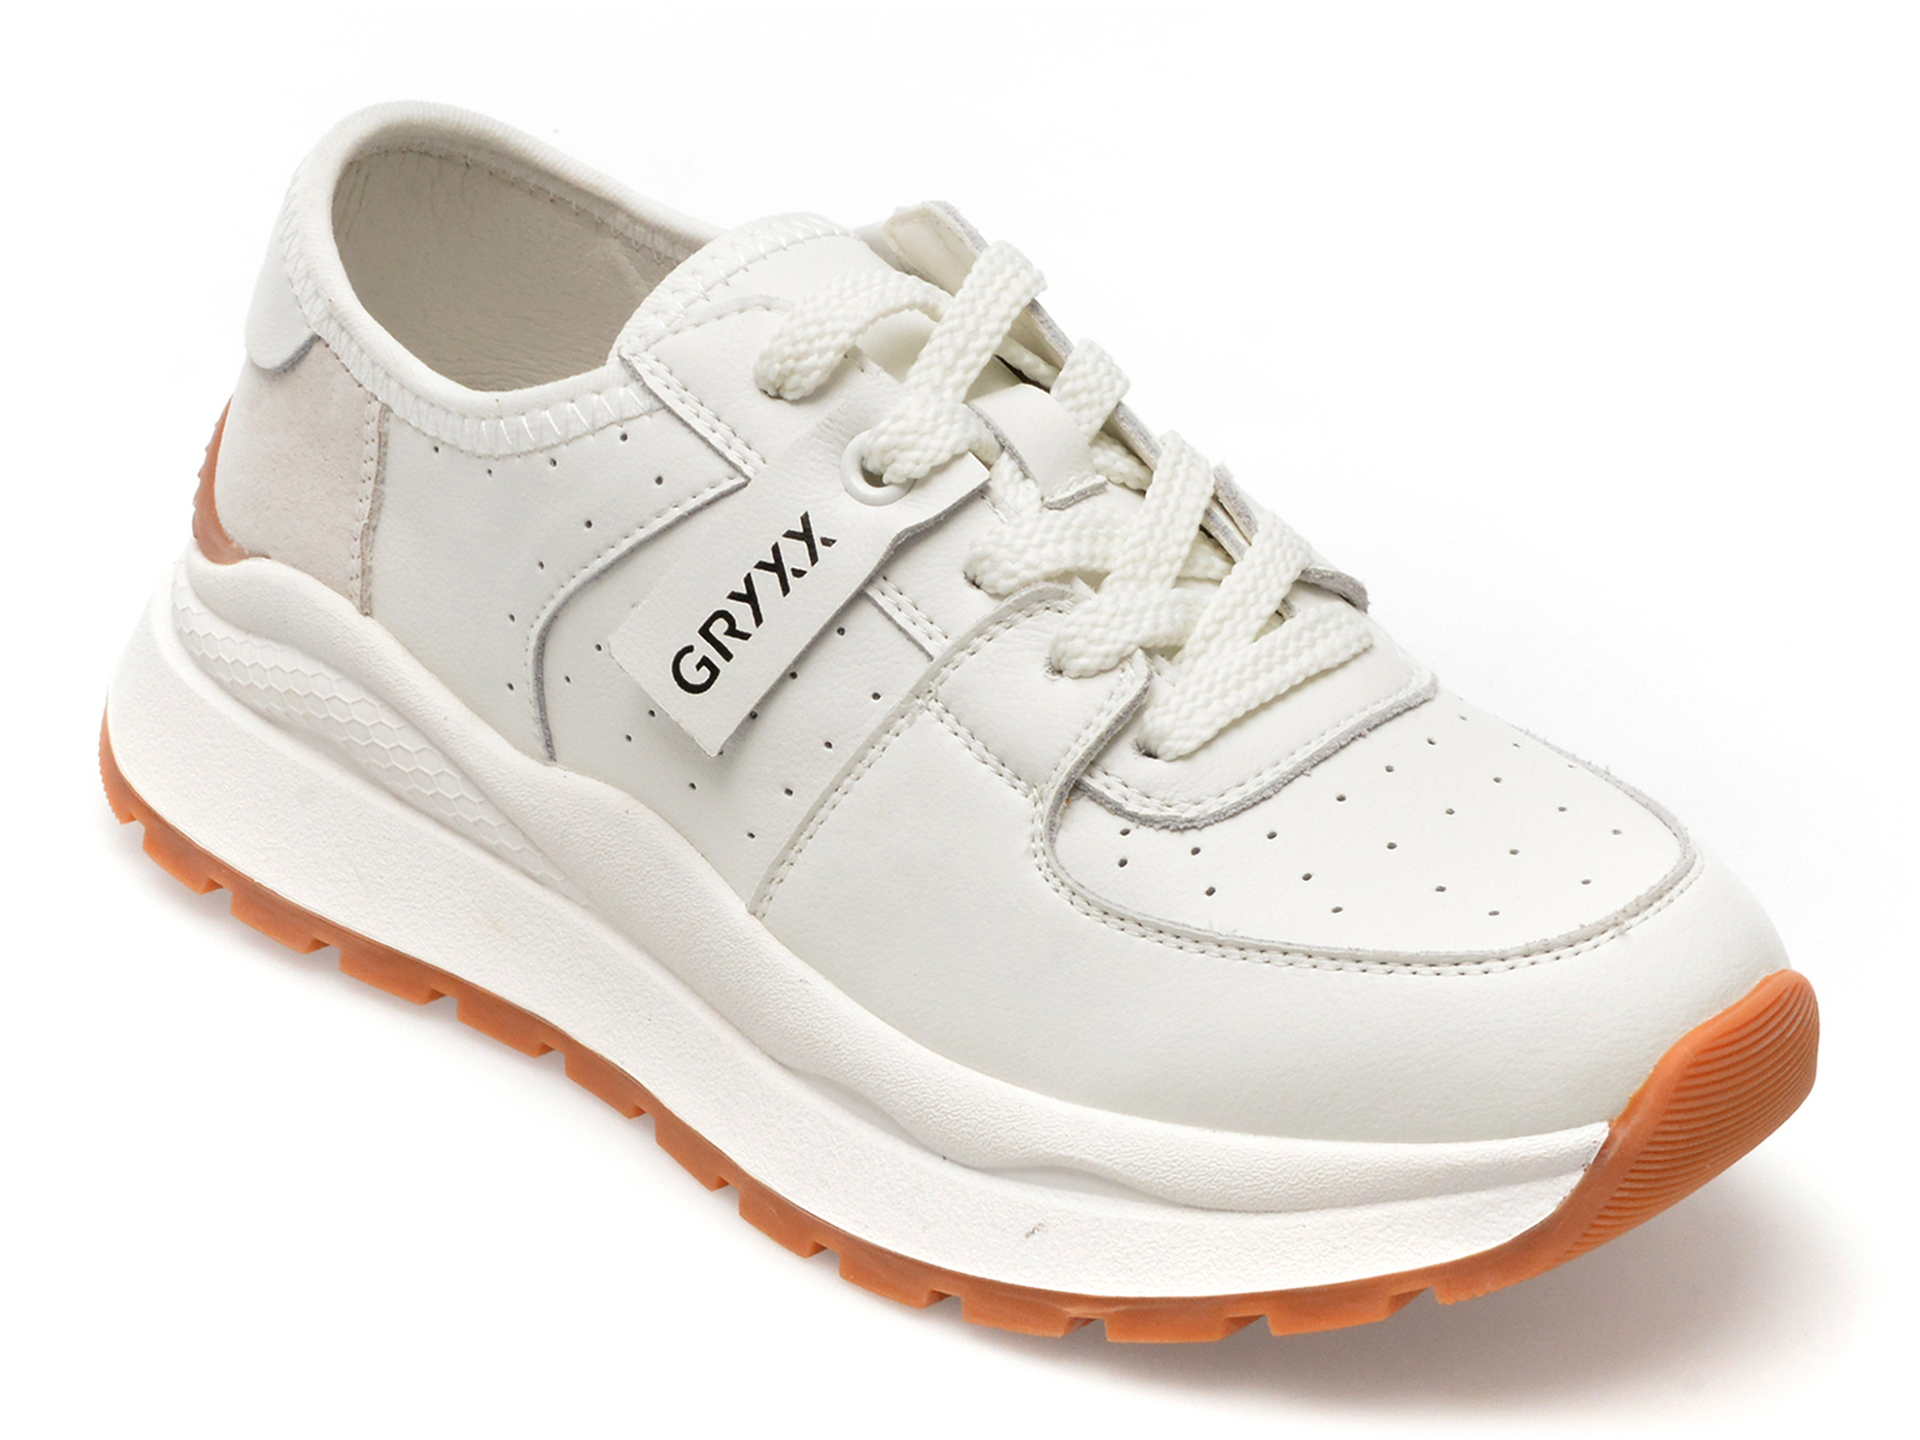 Pantofi GRYXX albi, 23081, din piele naturala